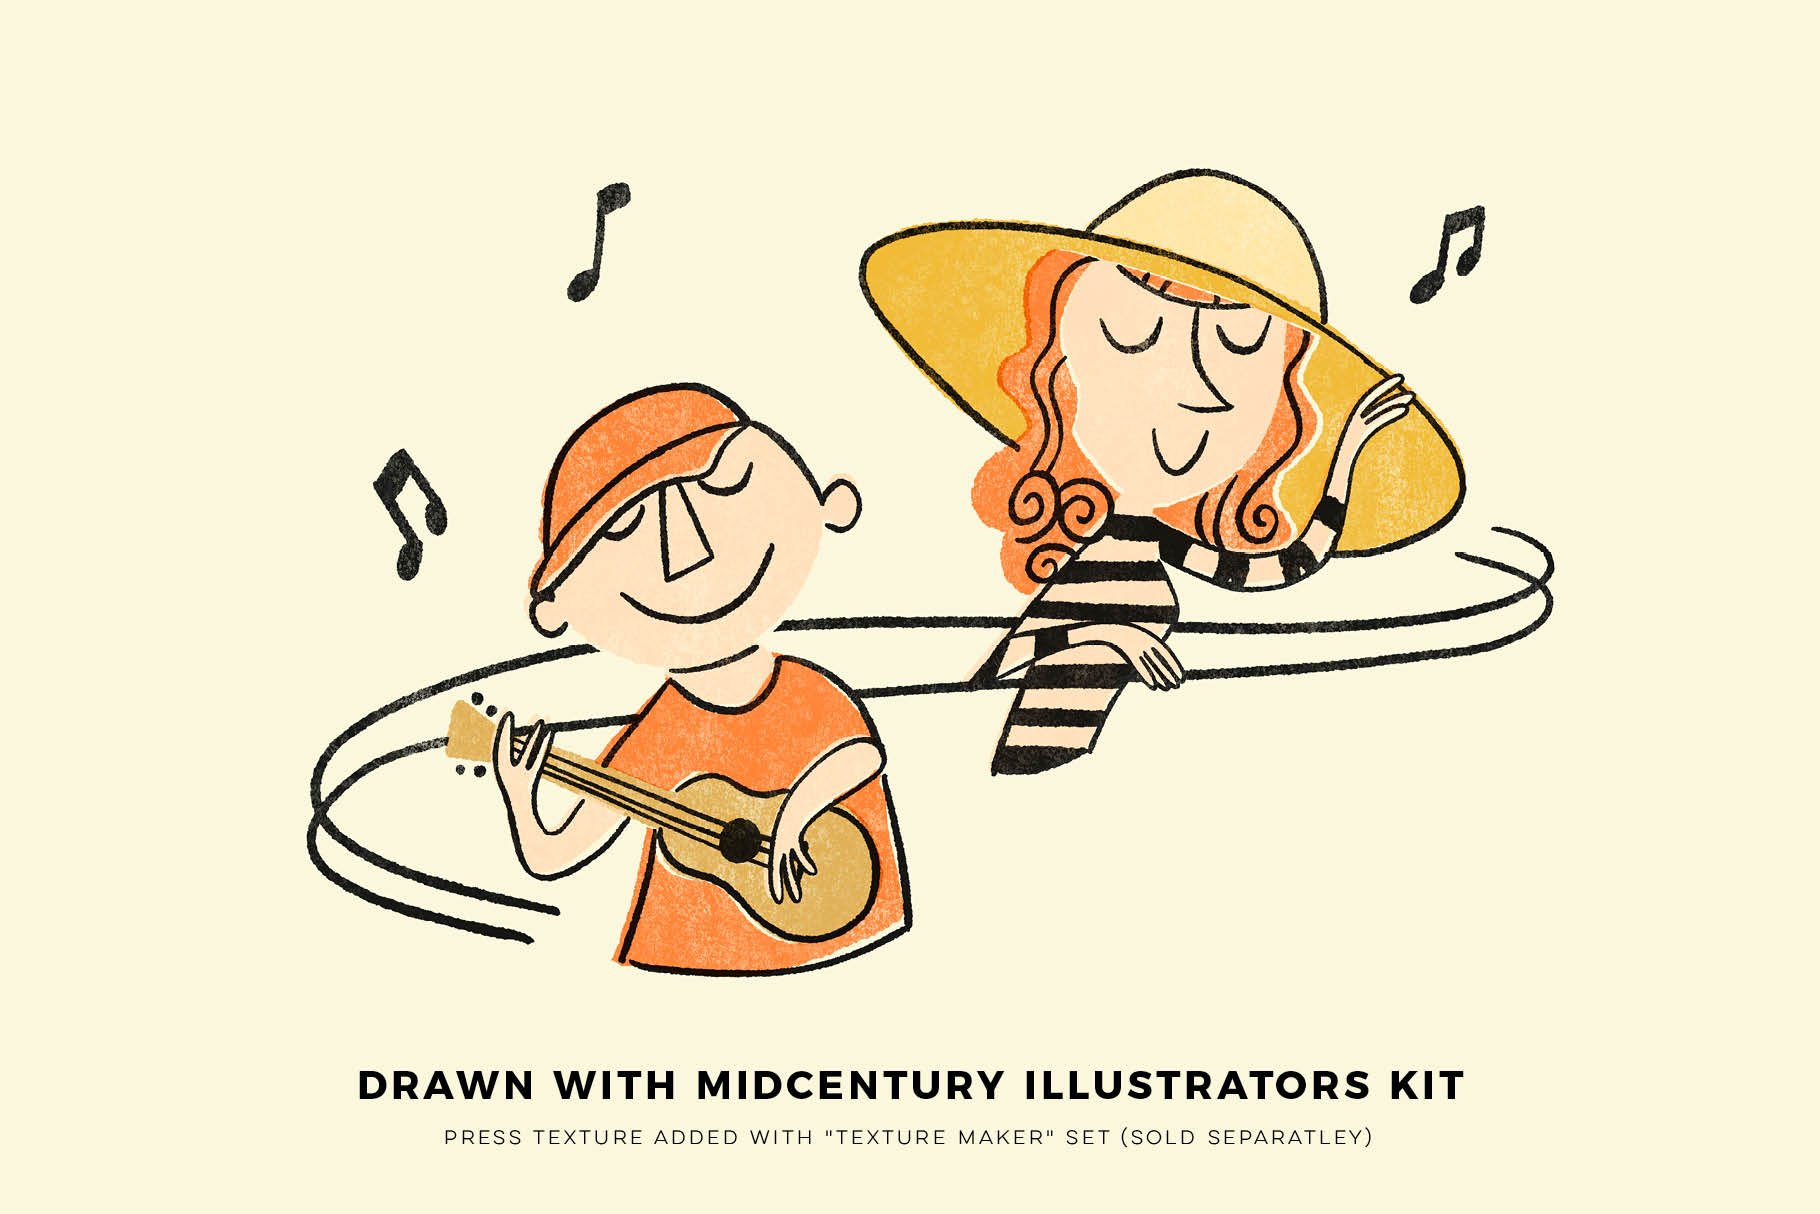 Midcentury Illustrator's Kit